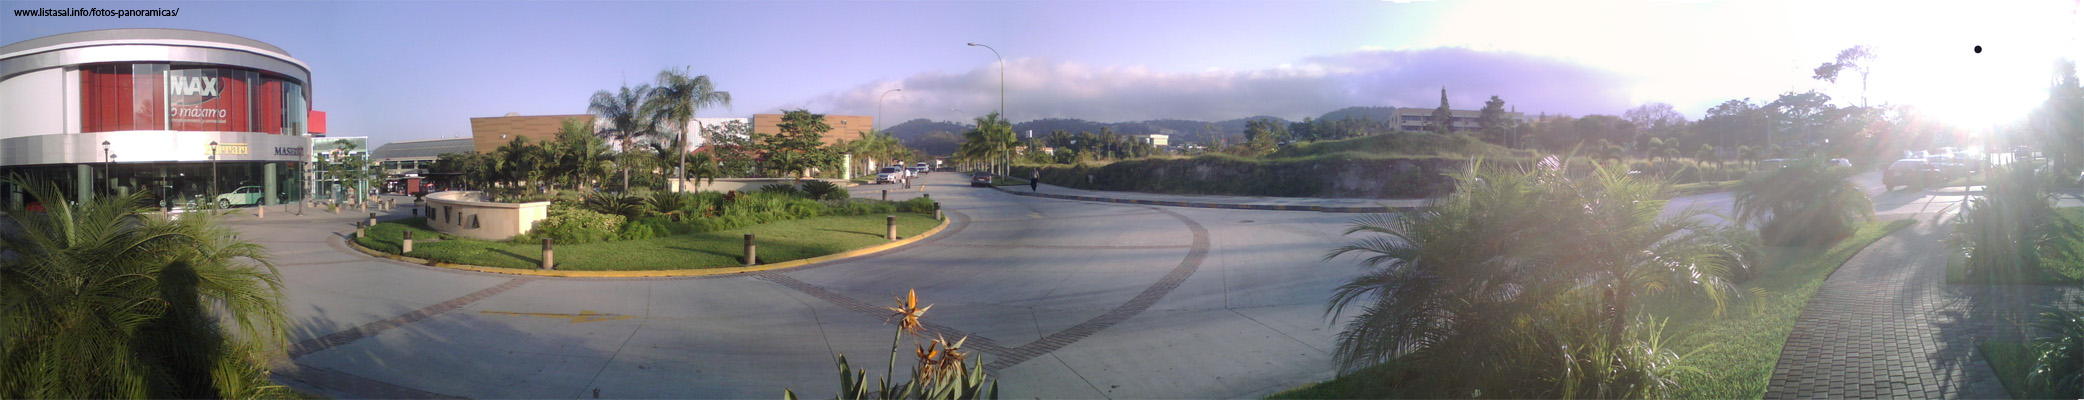 Foto Panoramica del Centro Comercial La Gran Via, Antiguo Cuscatlán, El Salvador